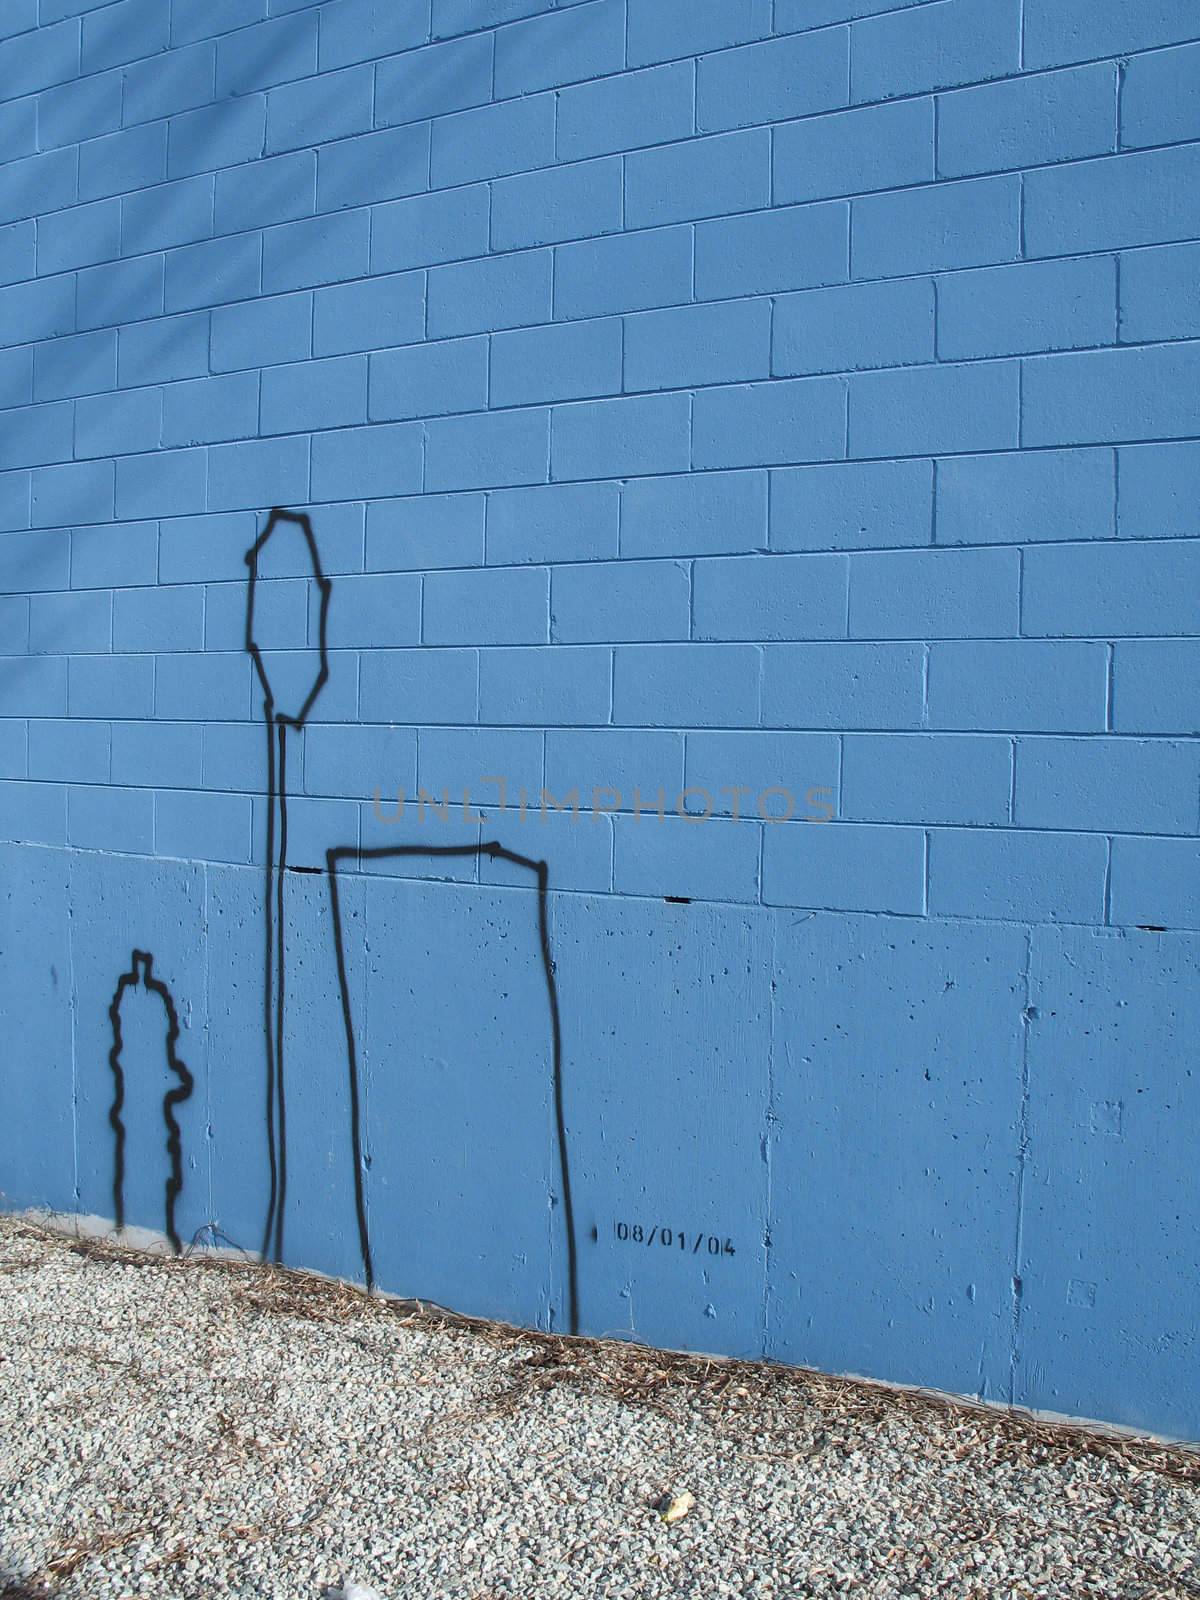 graffiti on a blue wall by mmm